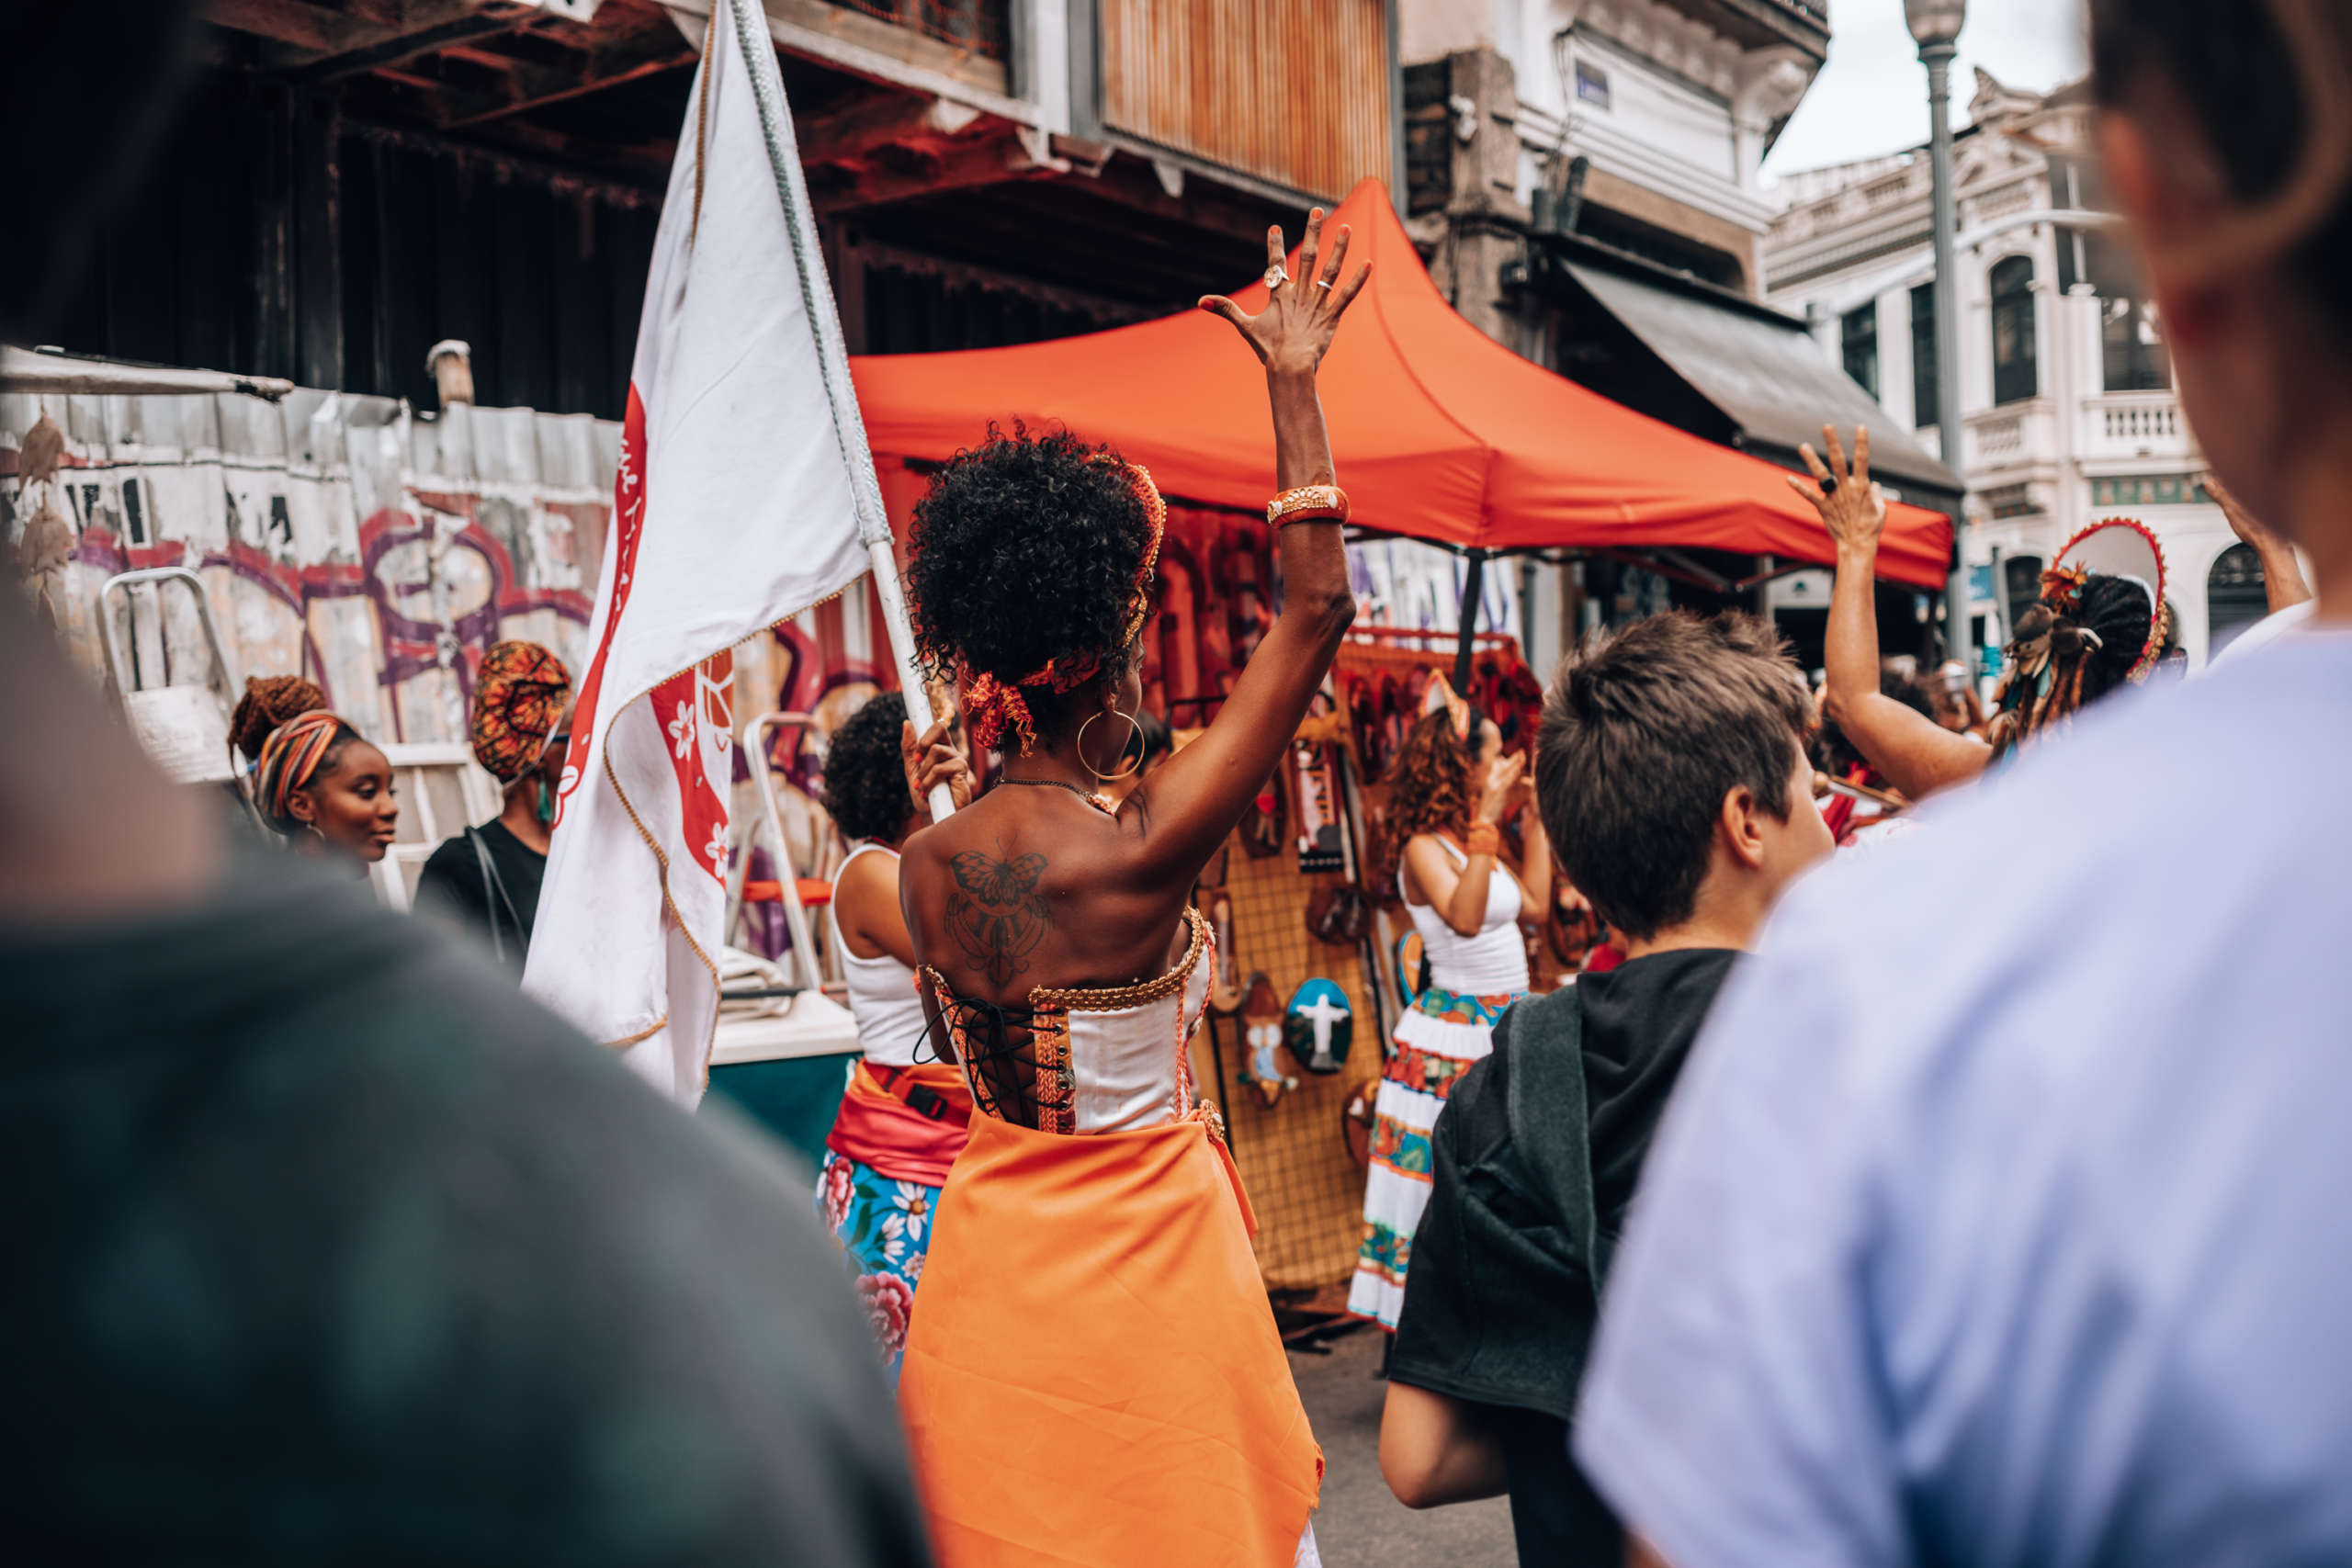 Auf dem Straßenkarneval in Rio feiern die Menschen ausgelassen in bunter Kleidung - Rio während des Karnevals ist unbedingt eine Reise wert.